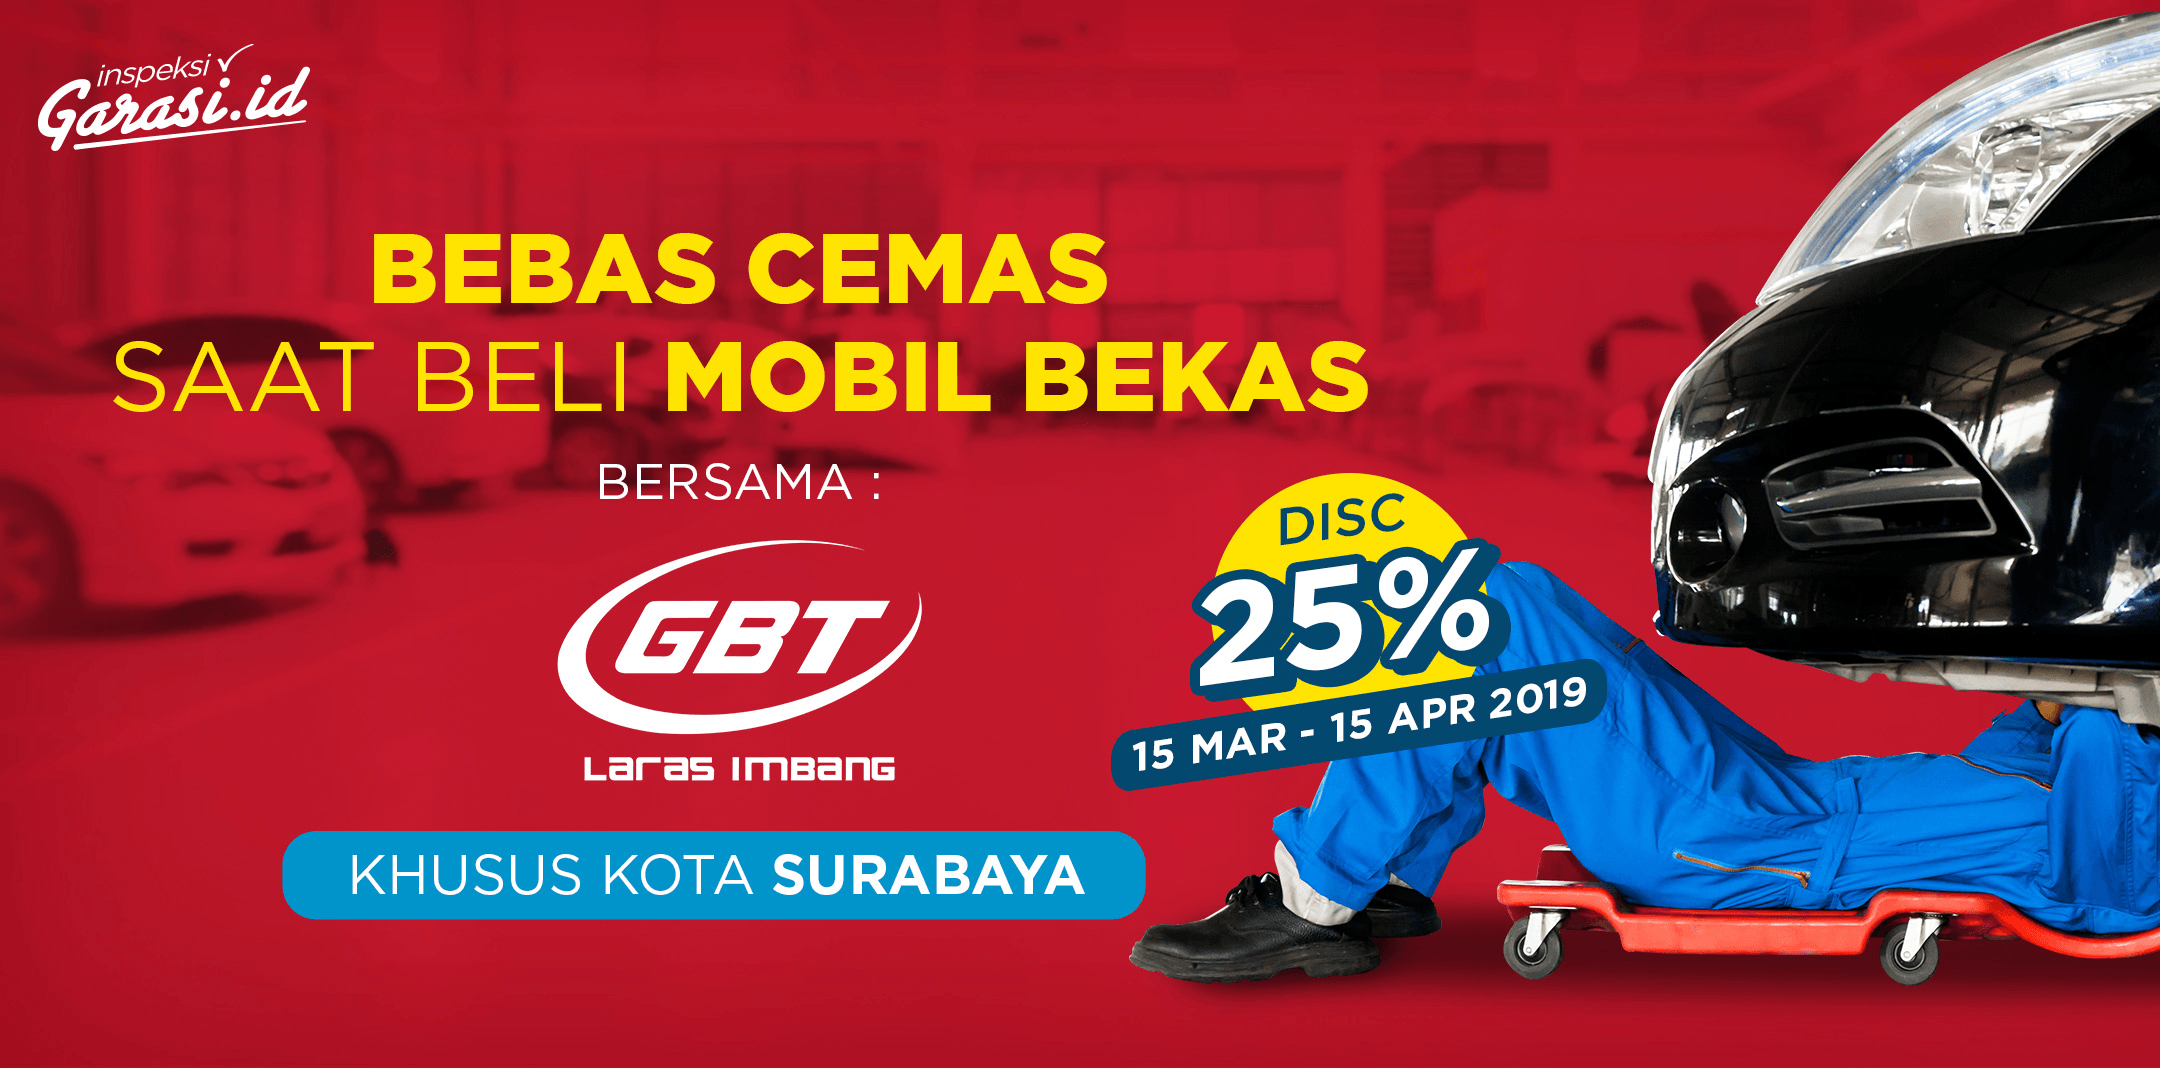 Layanan Inspeksi Mobil Bekas kini tersedia untuk warga kota Surabaya